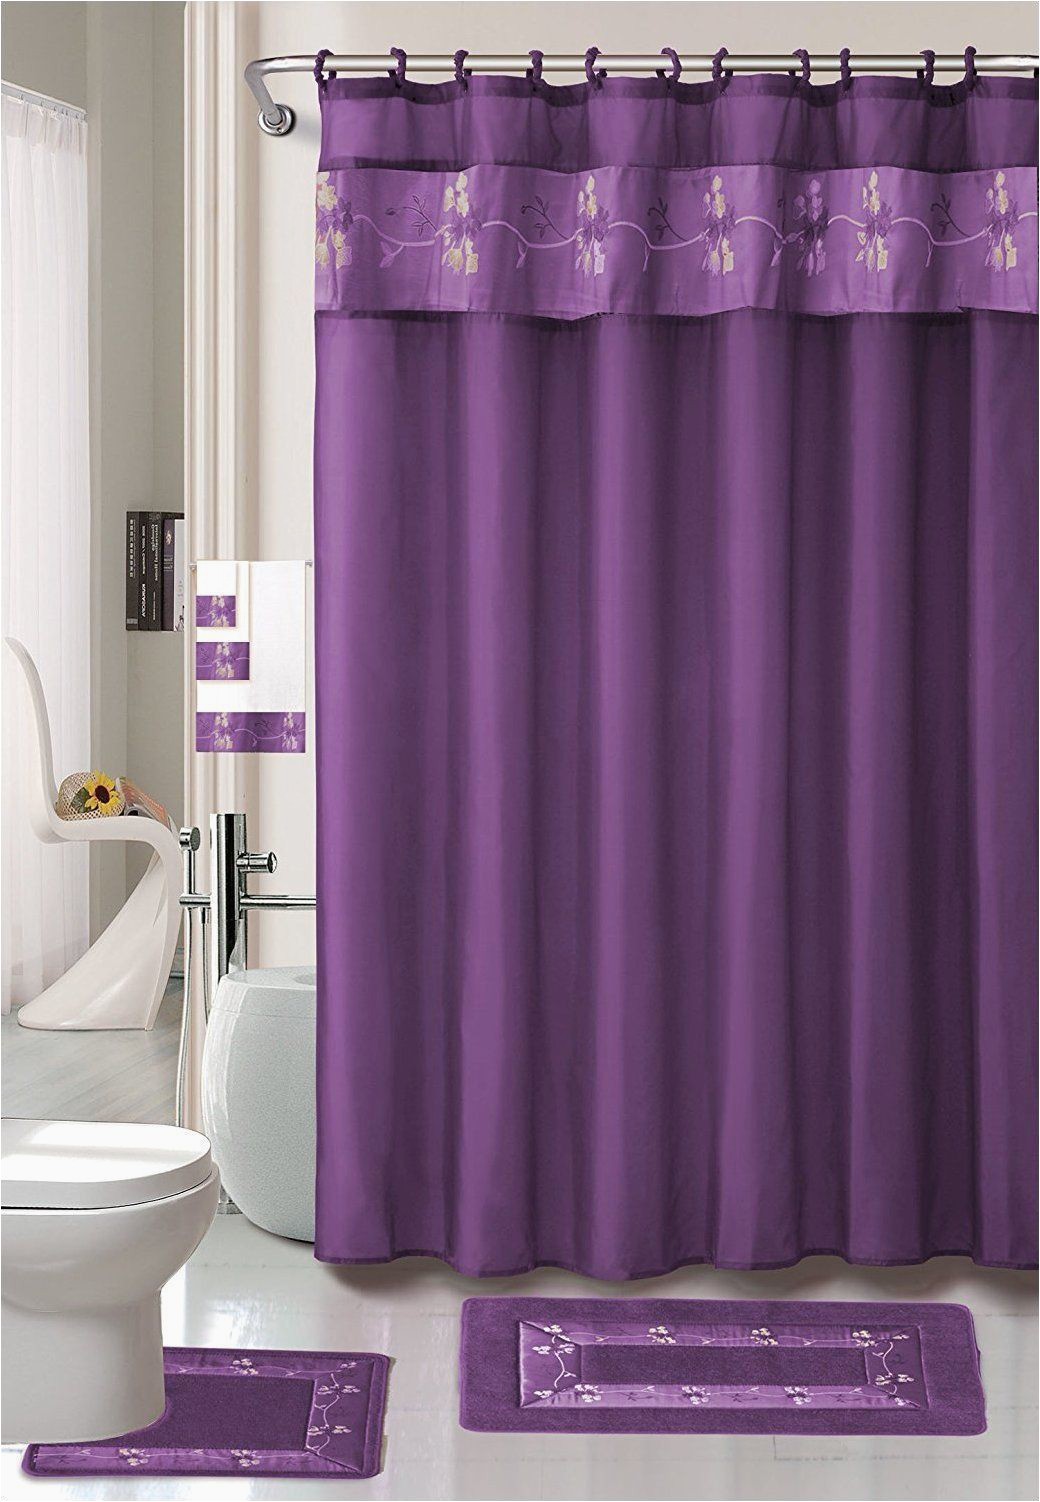 Forest Green Bathroom Rug Sets Shower Curtain 12 Metal Crystal Roller Ball Shower Hooks 3